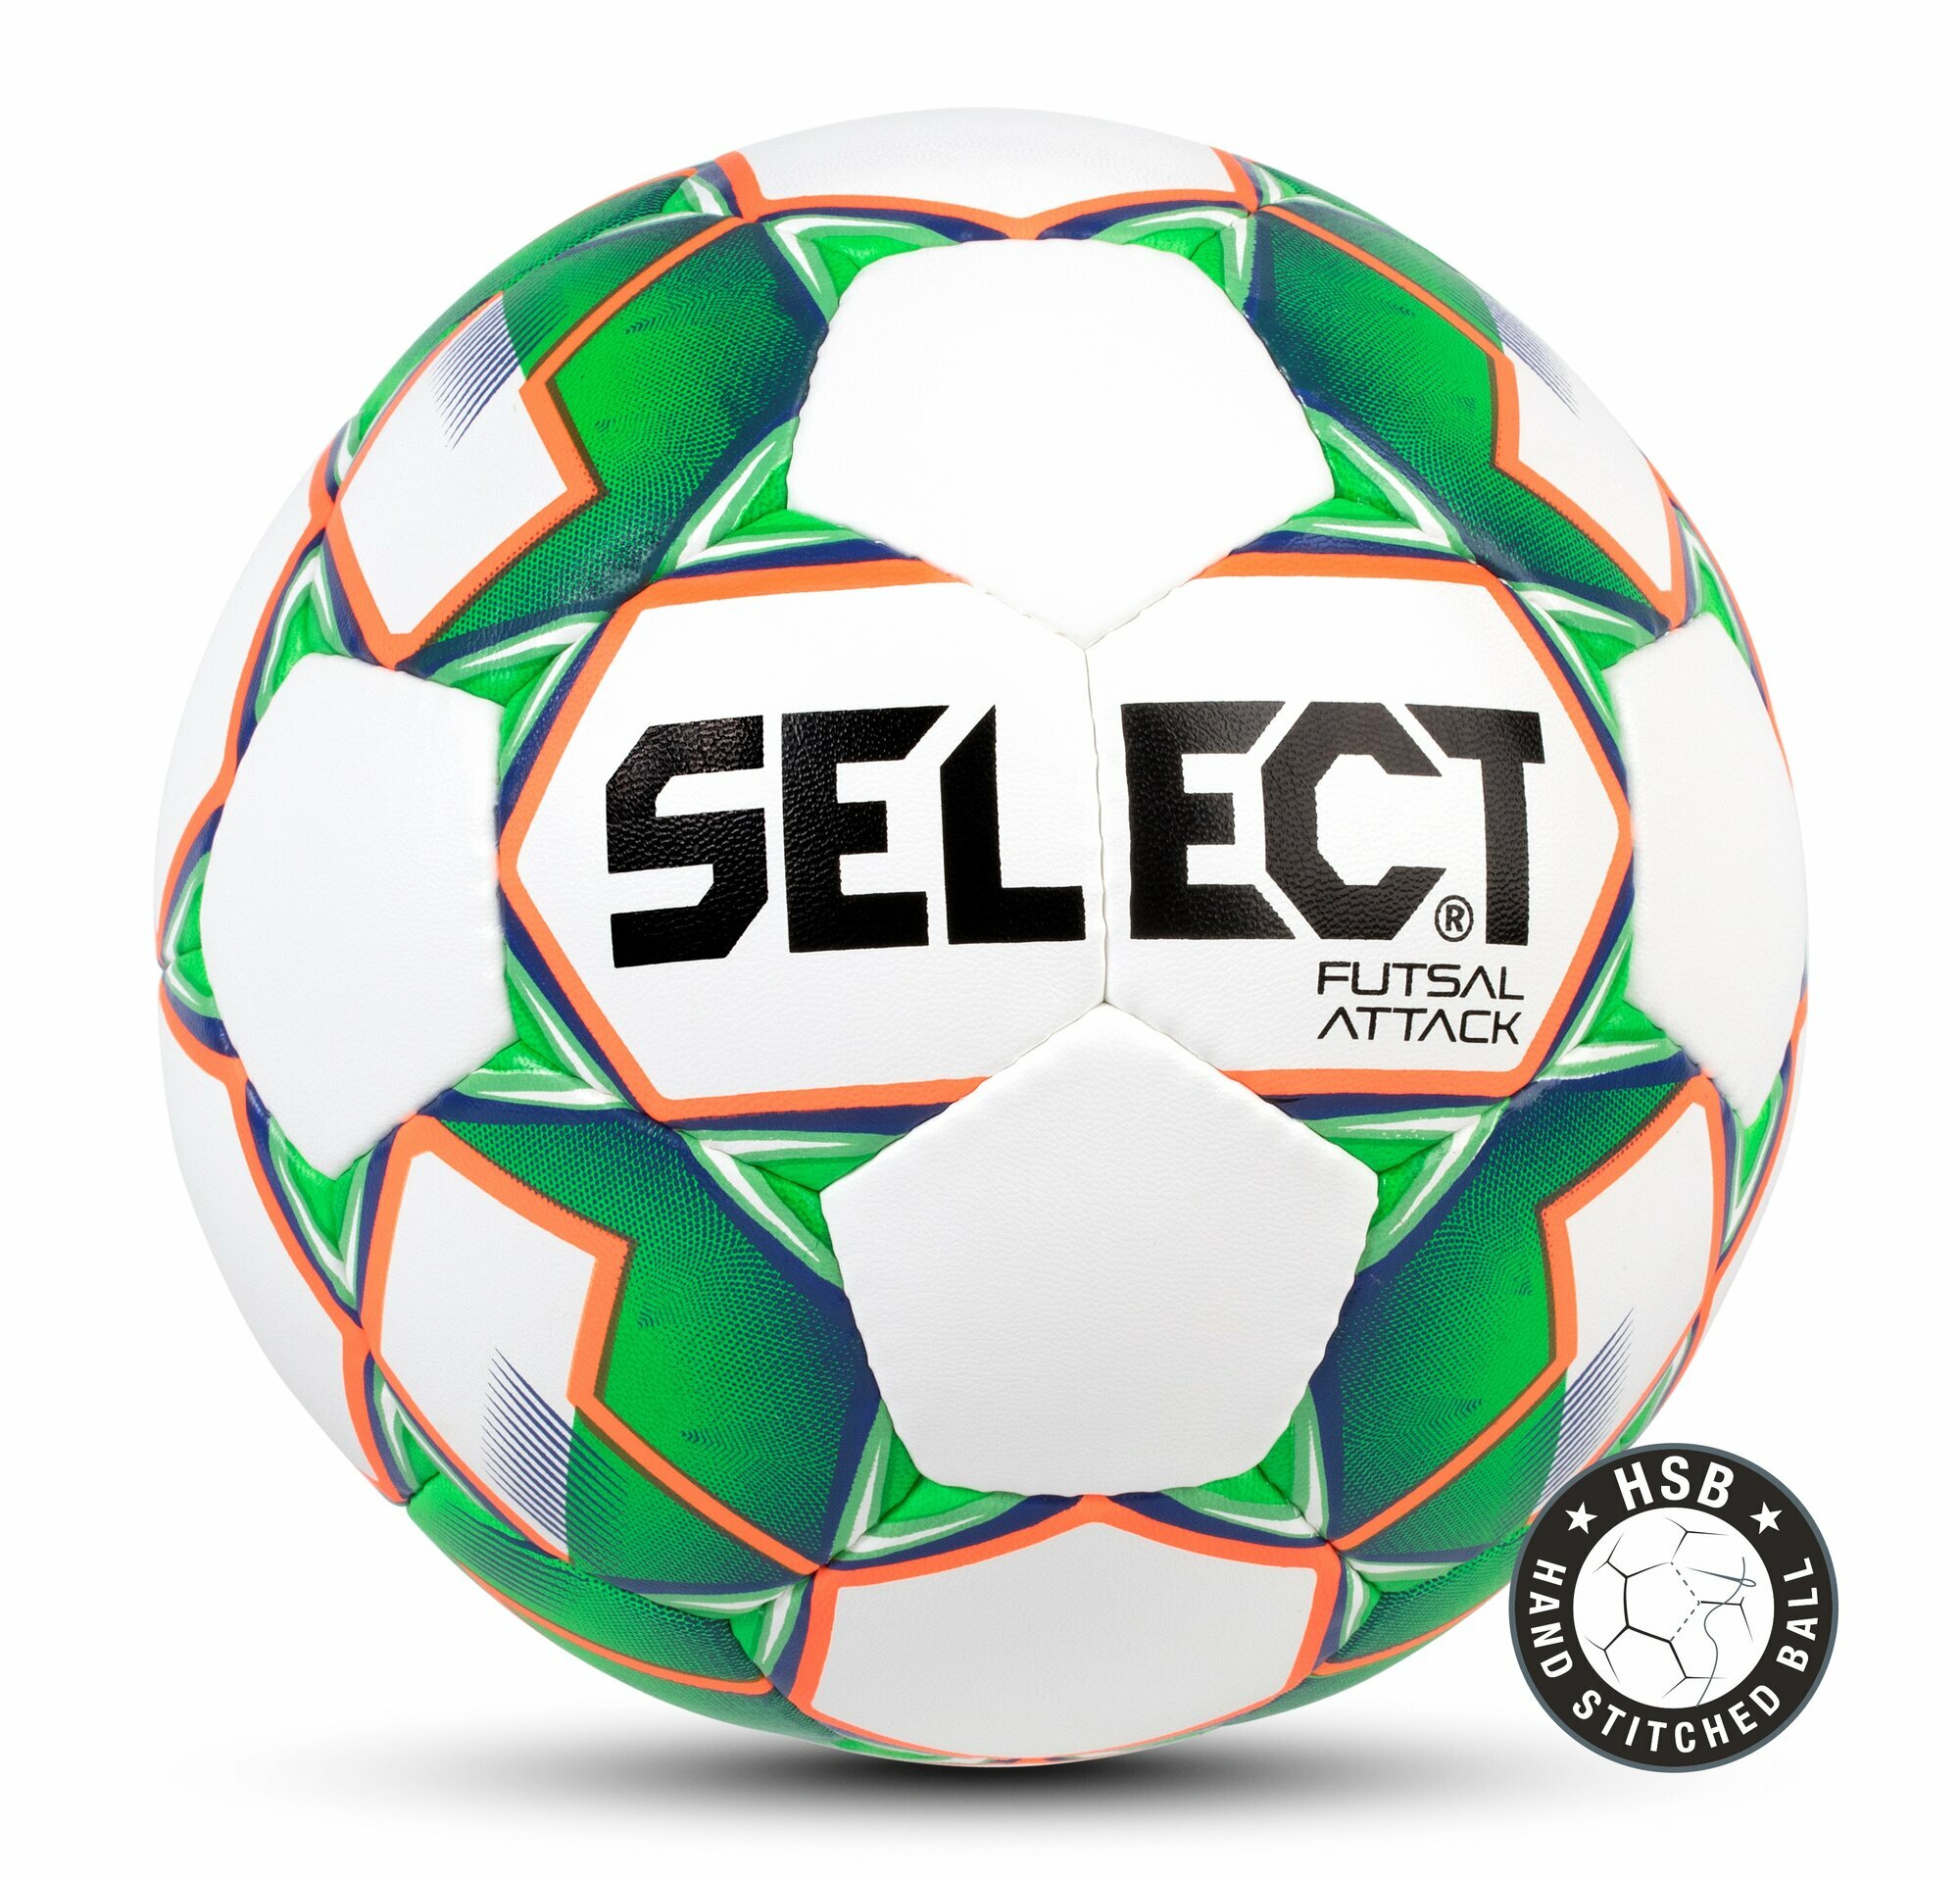 Мяч Select футзальный Select Futsal Attack, 4, белый, тренировочный, ручная сшивка